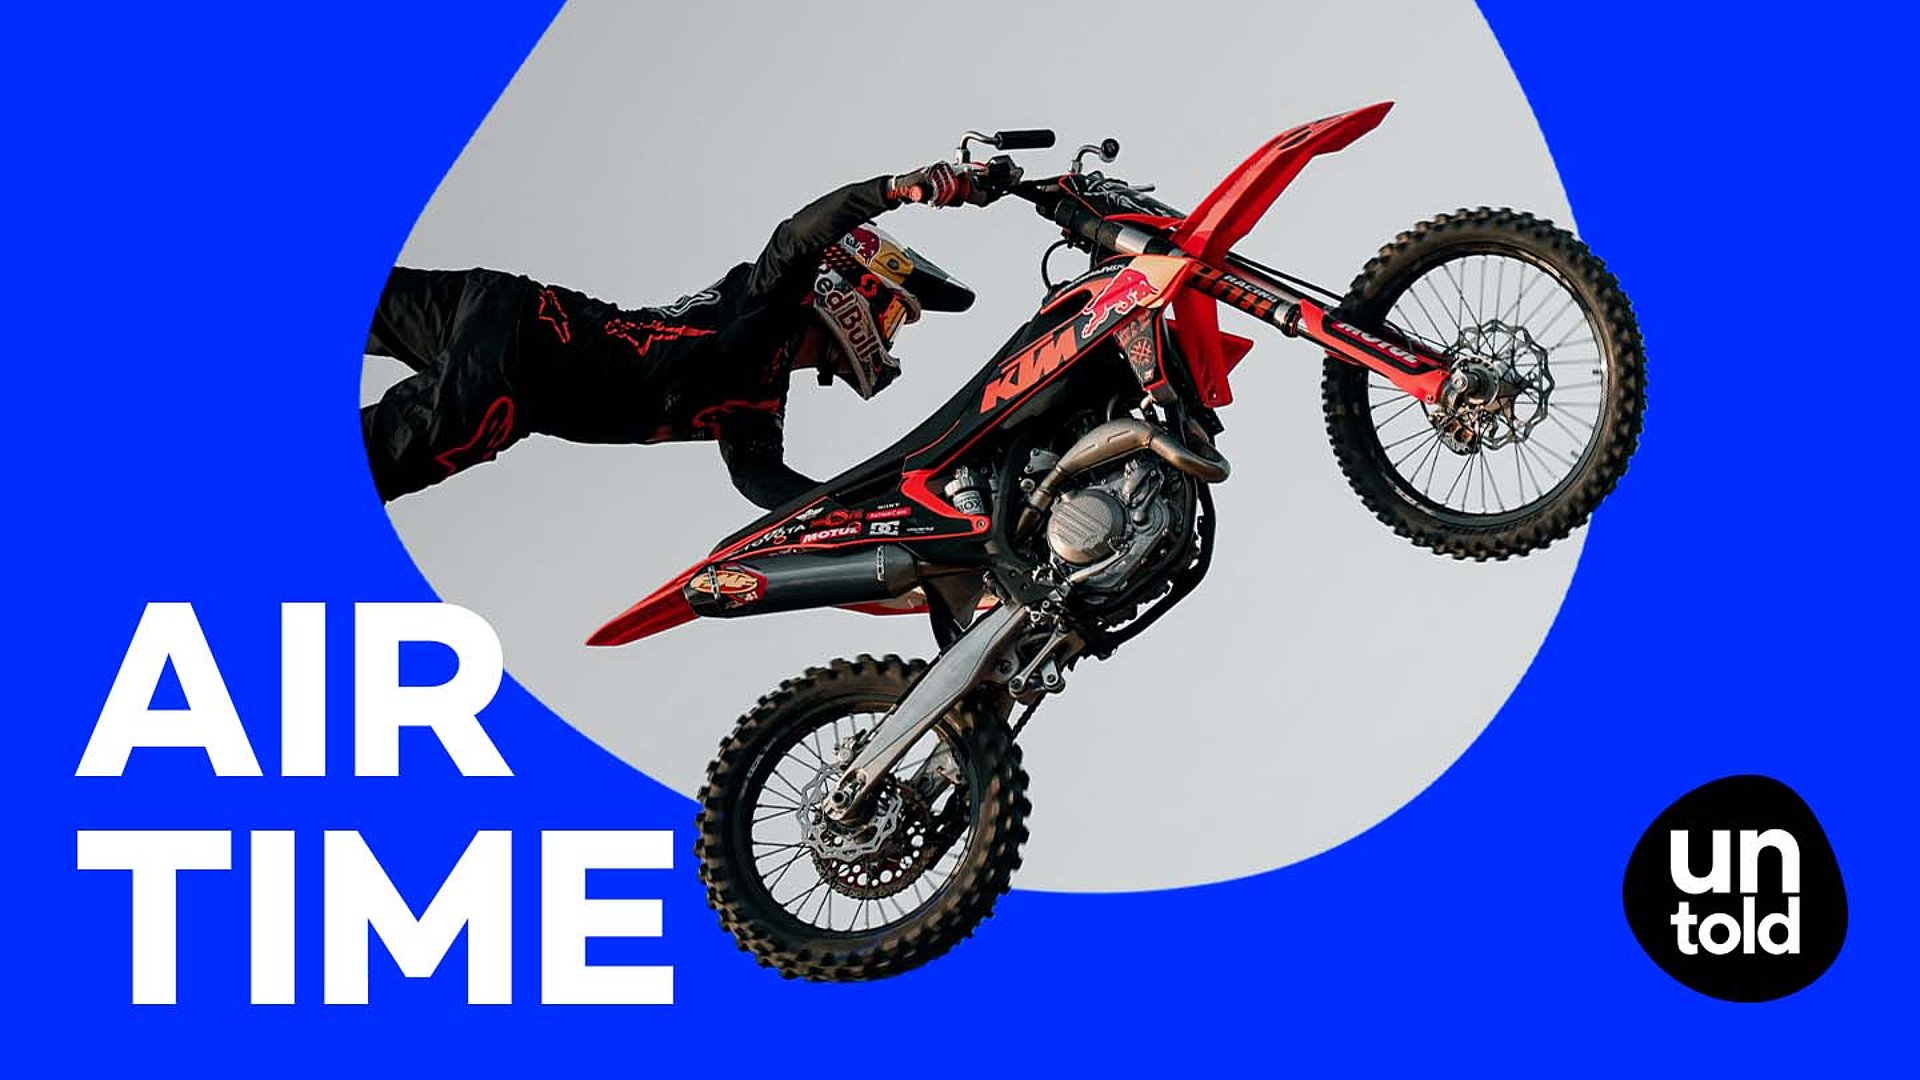 Mann macht mit Motocross-Motorrad einen Stunt und schwebt in der Luft